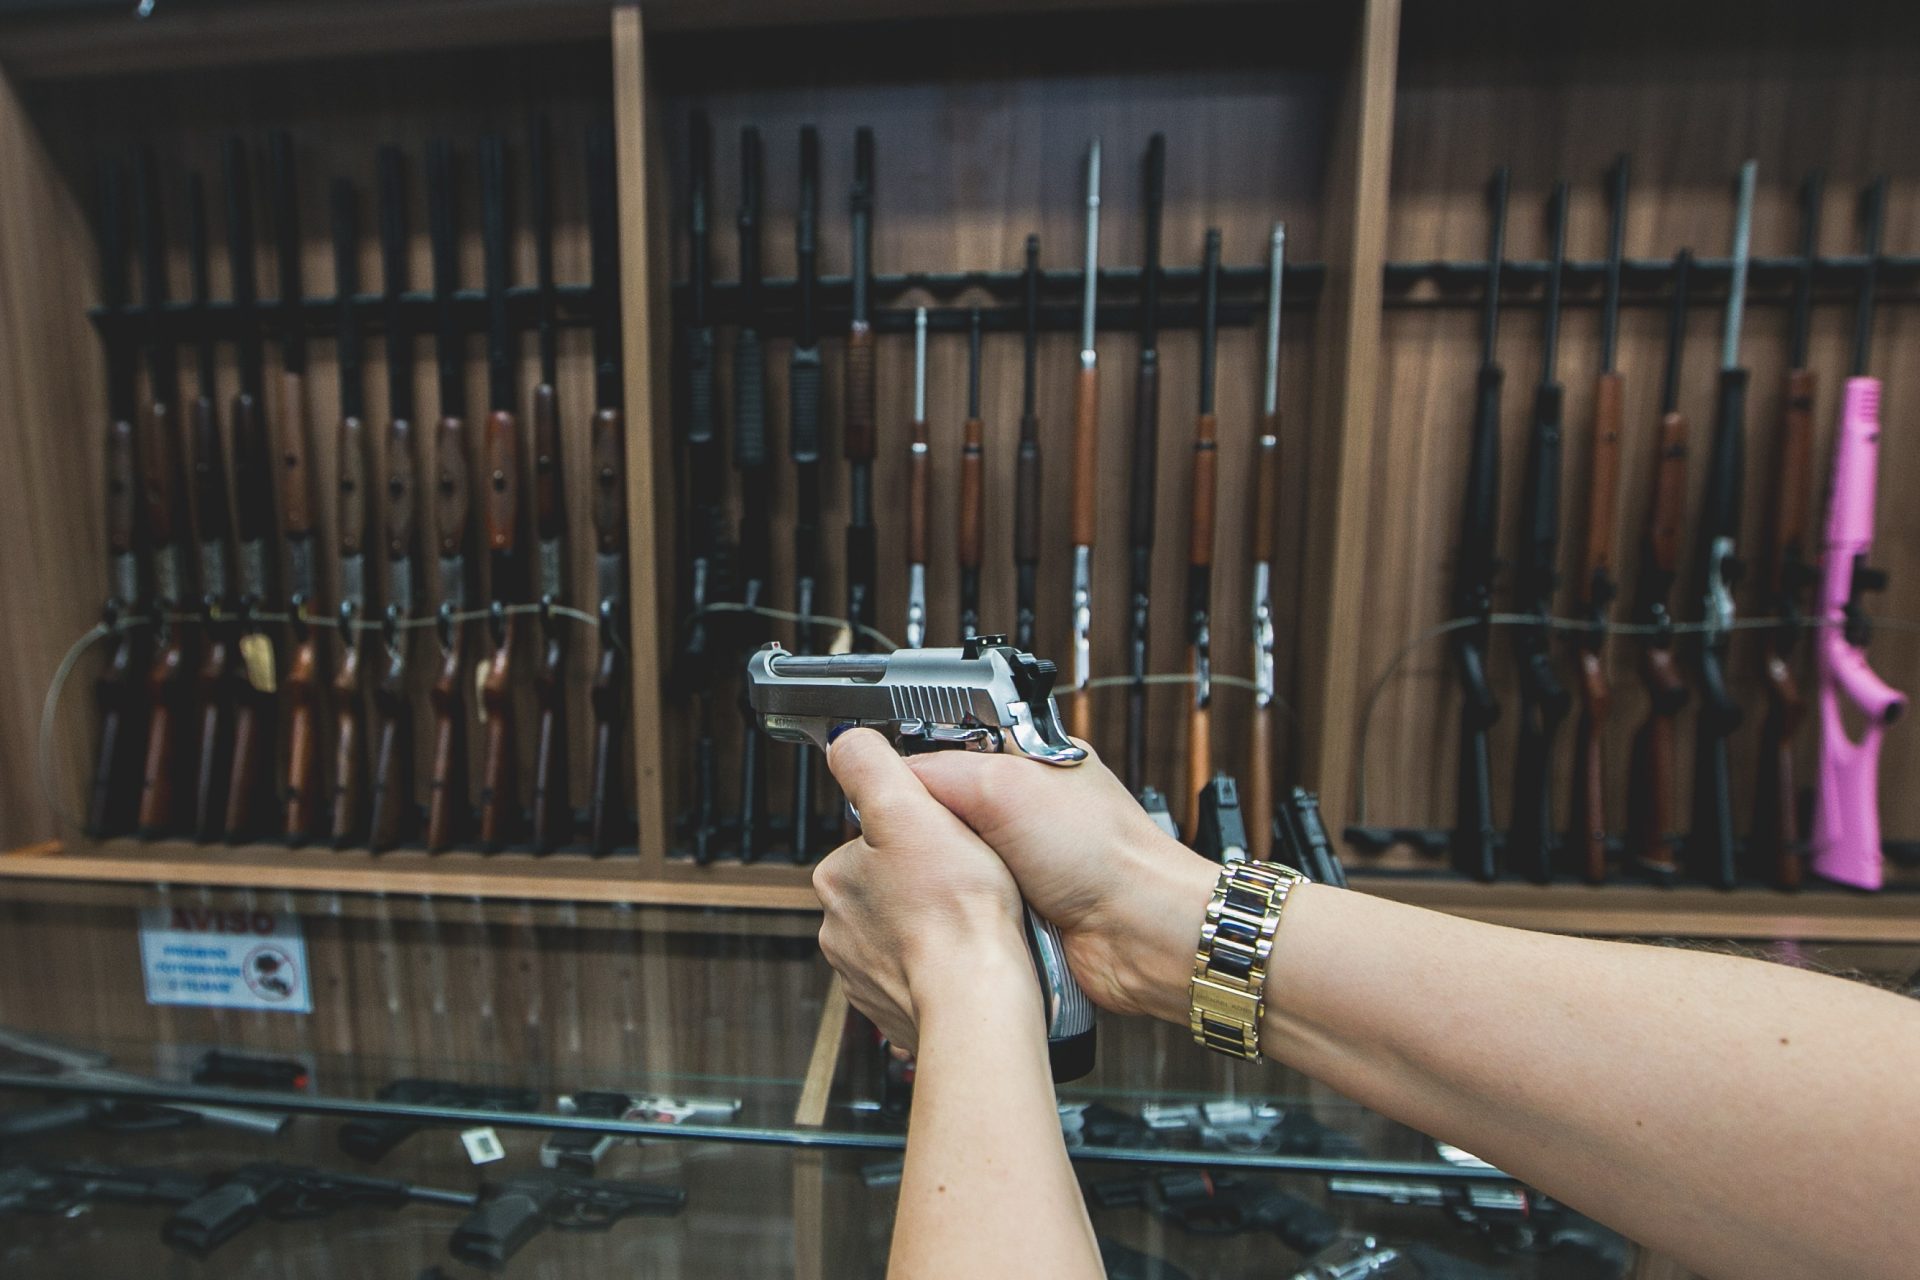 Novo decreto de armas reduz acesso do cidadão comum - Foto: Valéria Gonçalvez/Agência Estado